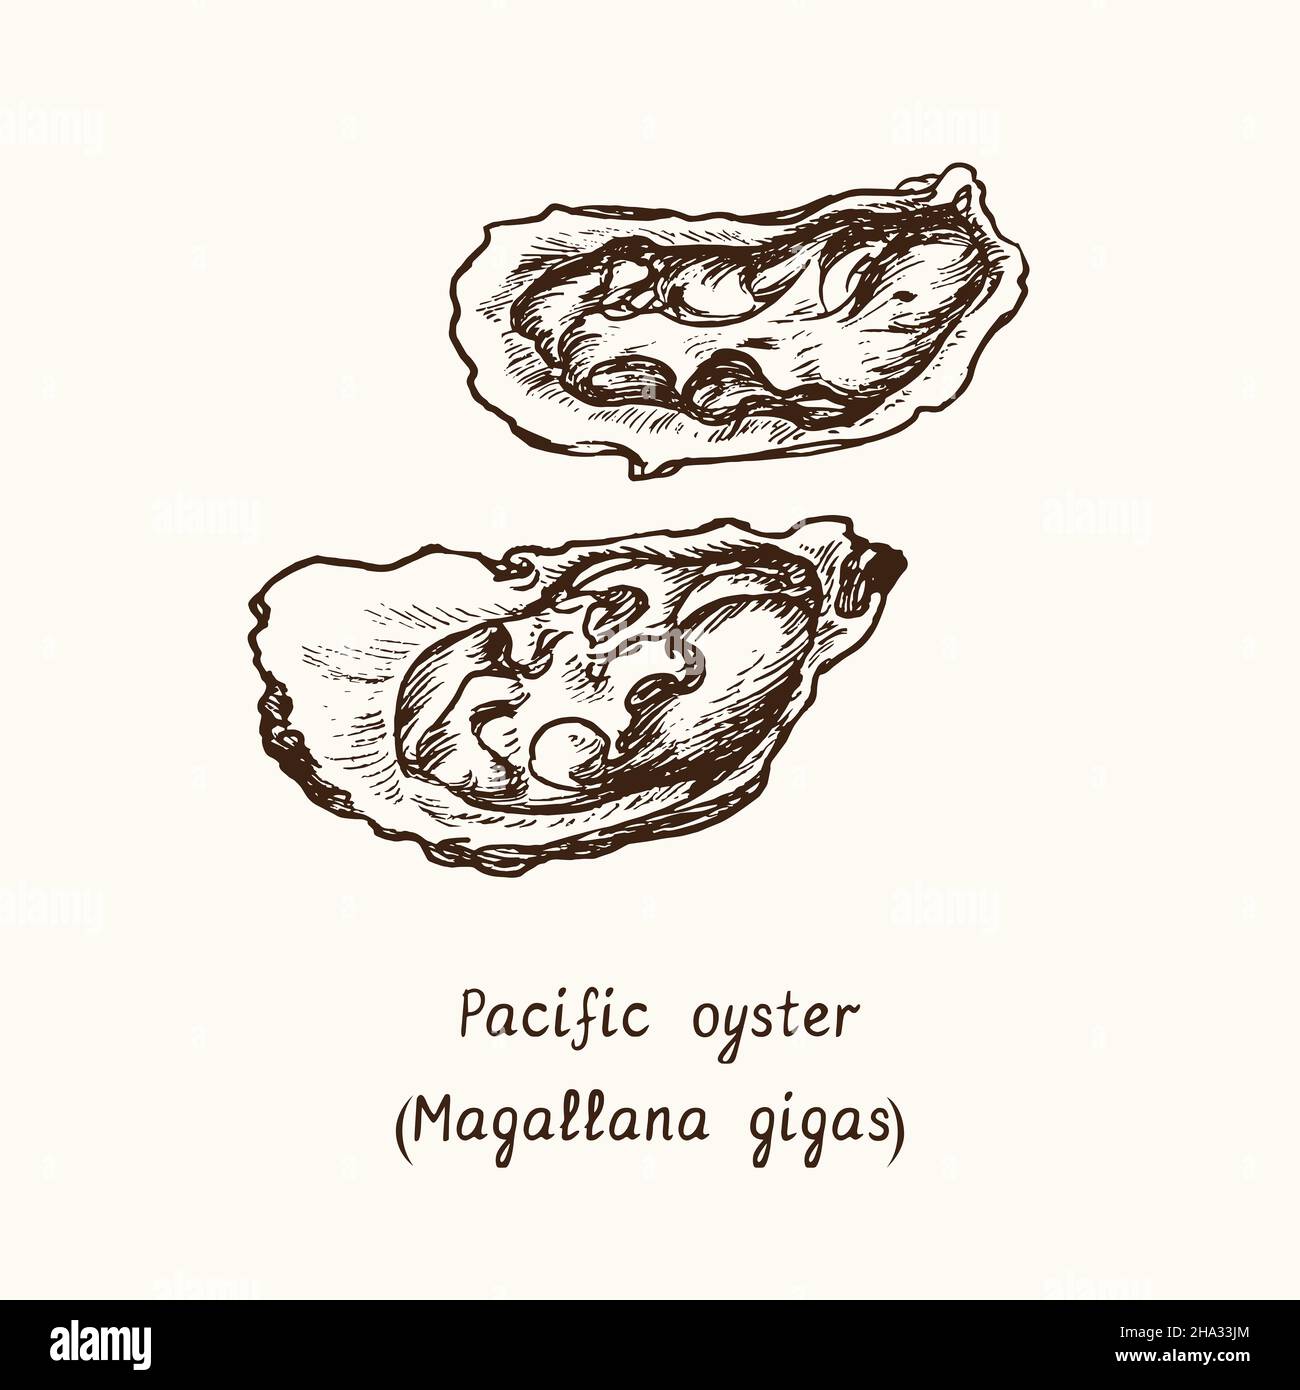 Pazifische, japanische oder Miyagi-Auster (Magallana gigas). Tusche schwarz-weiße Doodle-Zeichnung im Holzschnitt-Stil mit Inschrift. Stockfoto